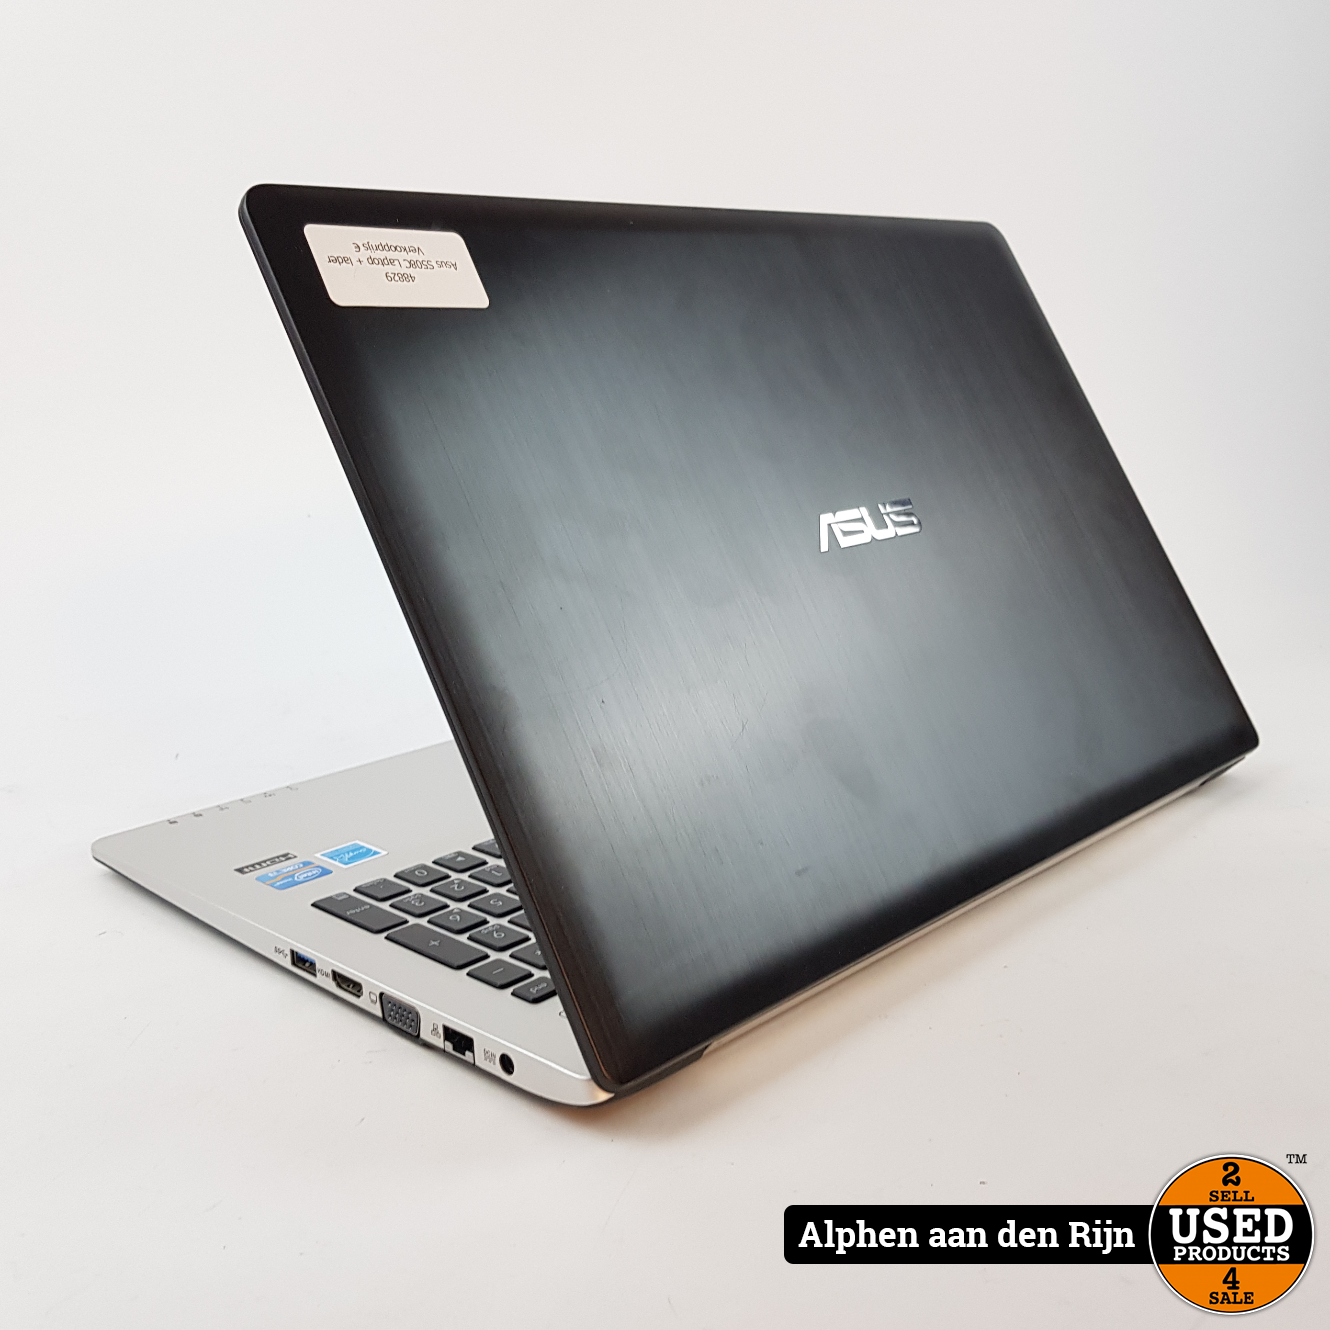 Asus Notebook Laptop || 3 maanden garantie - Products Alphen aan den Rijn